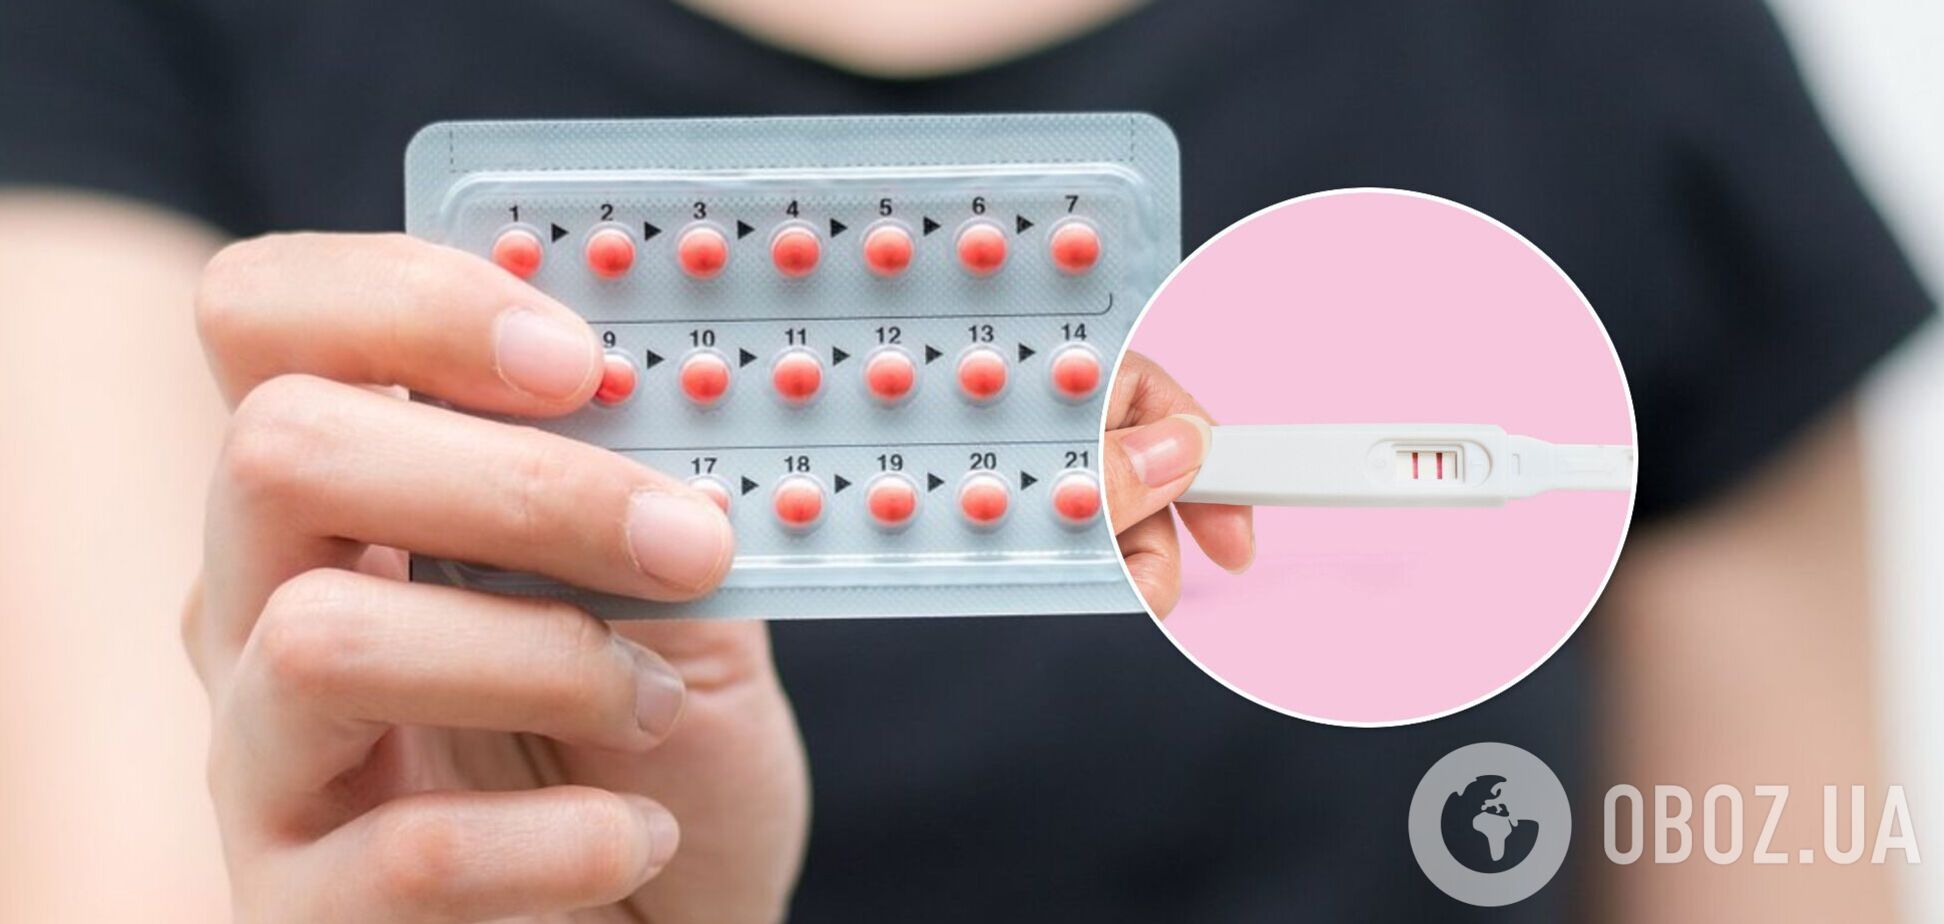 Репродуктолог развеяла мифы о противозачаточных таблетках